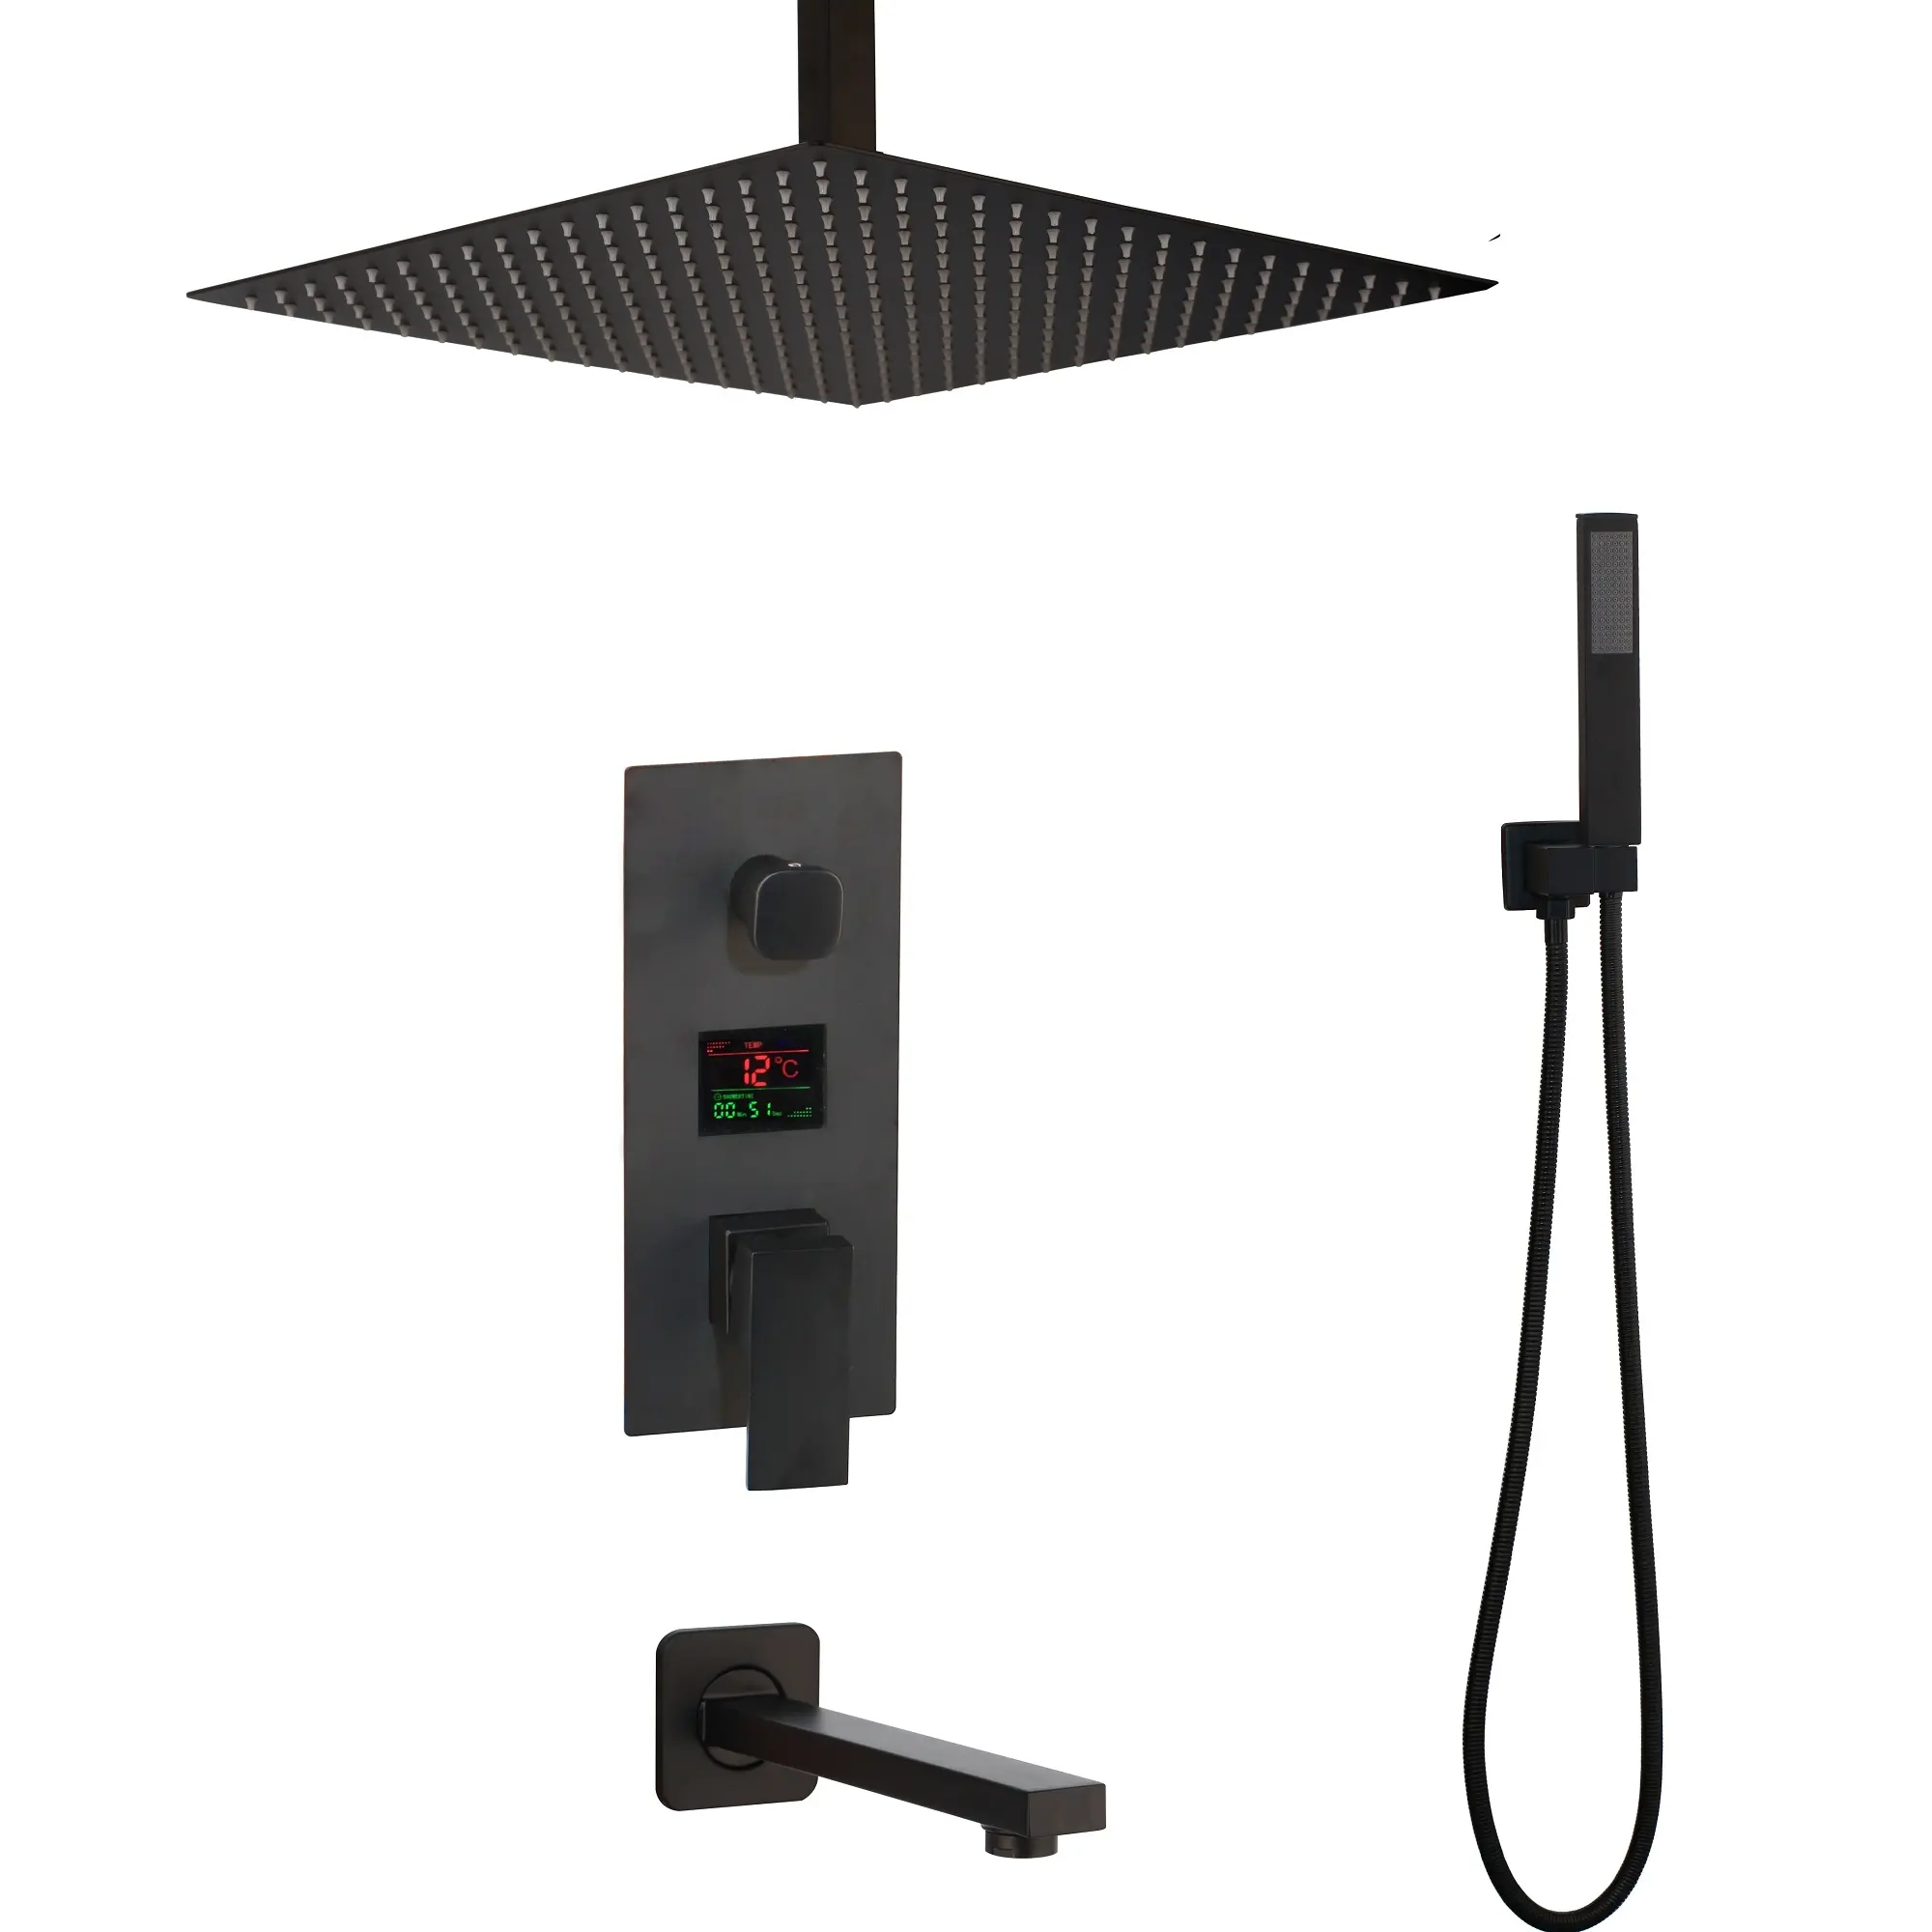 16" LED Balck Ceiling Shower Head Digital Mixer Valve Tub Spout Shower Faucet 